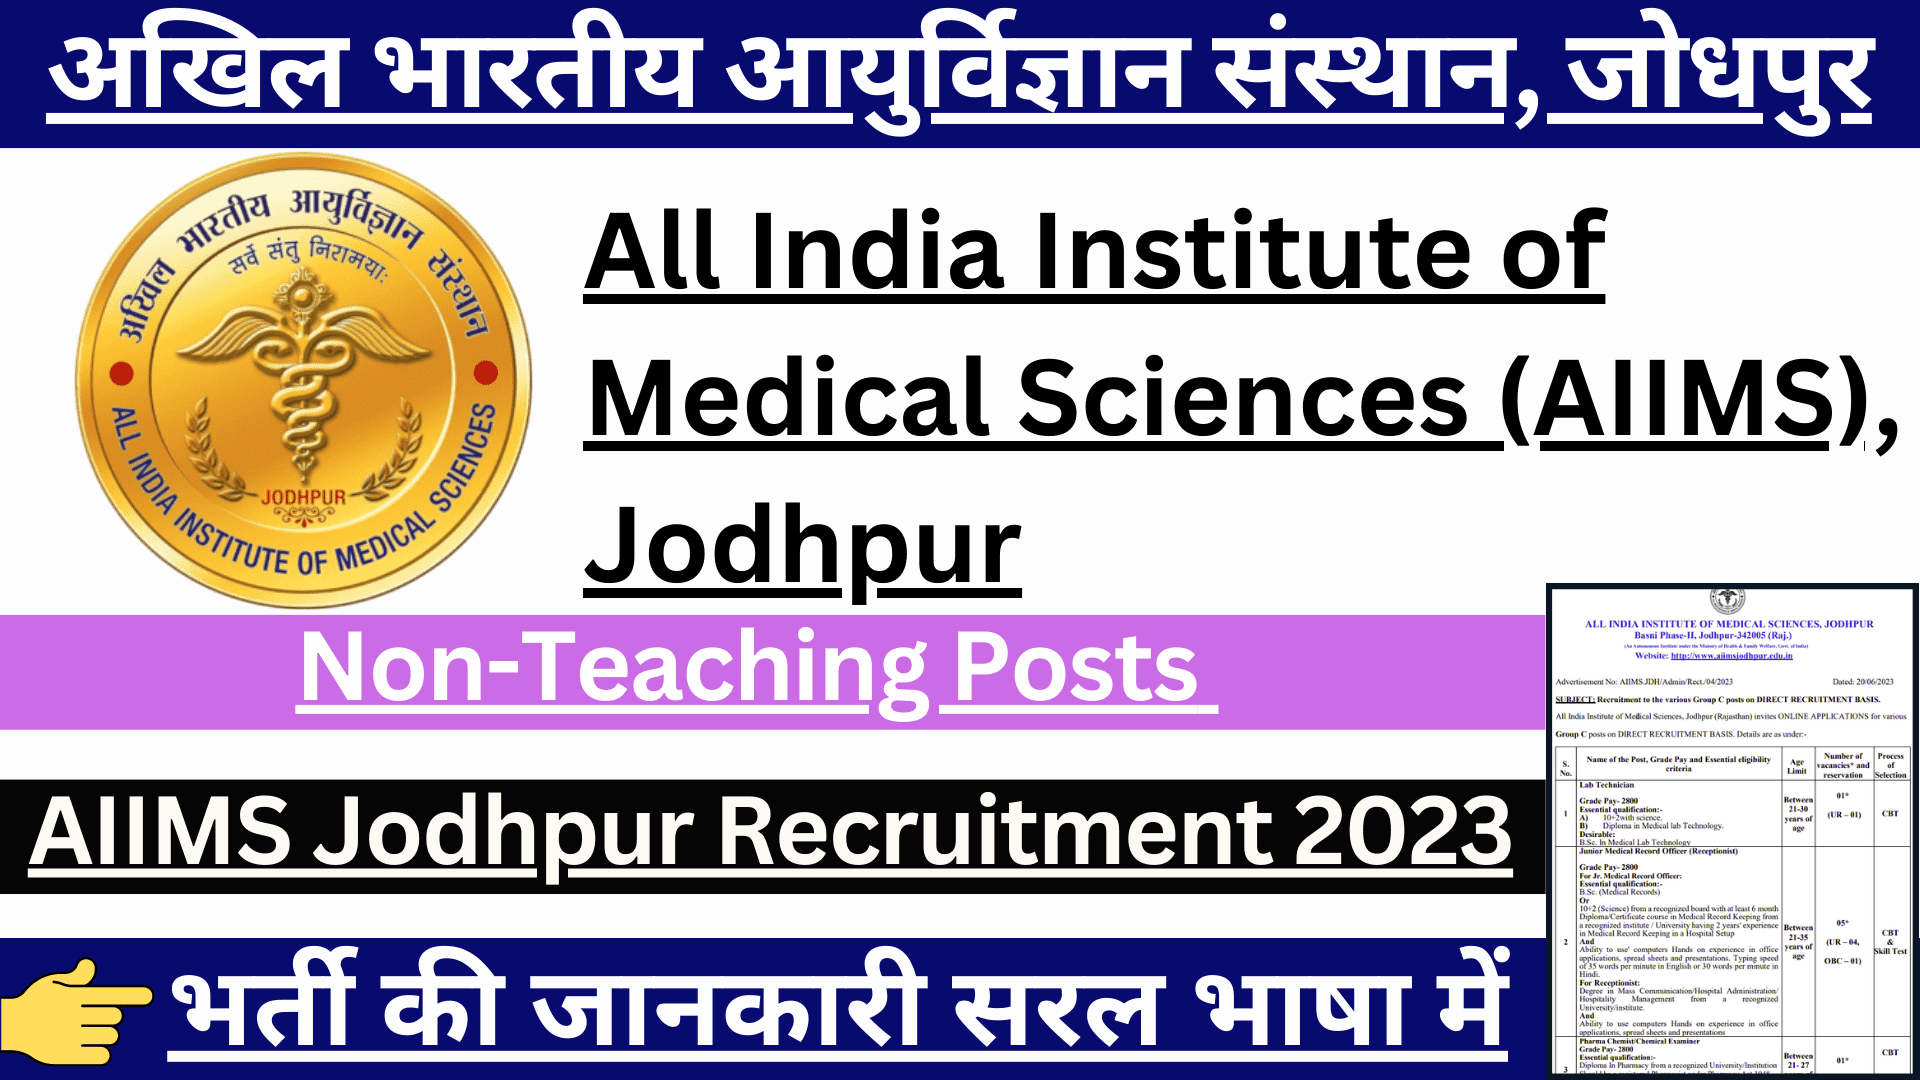 AIIMS Jodhpur Non-Teaching Recruitment 2023